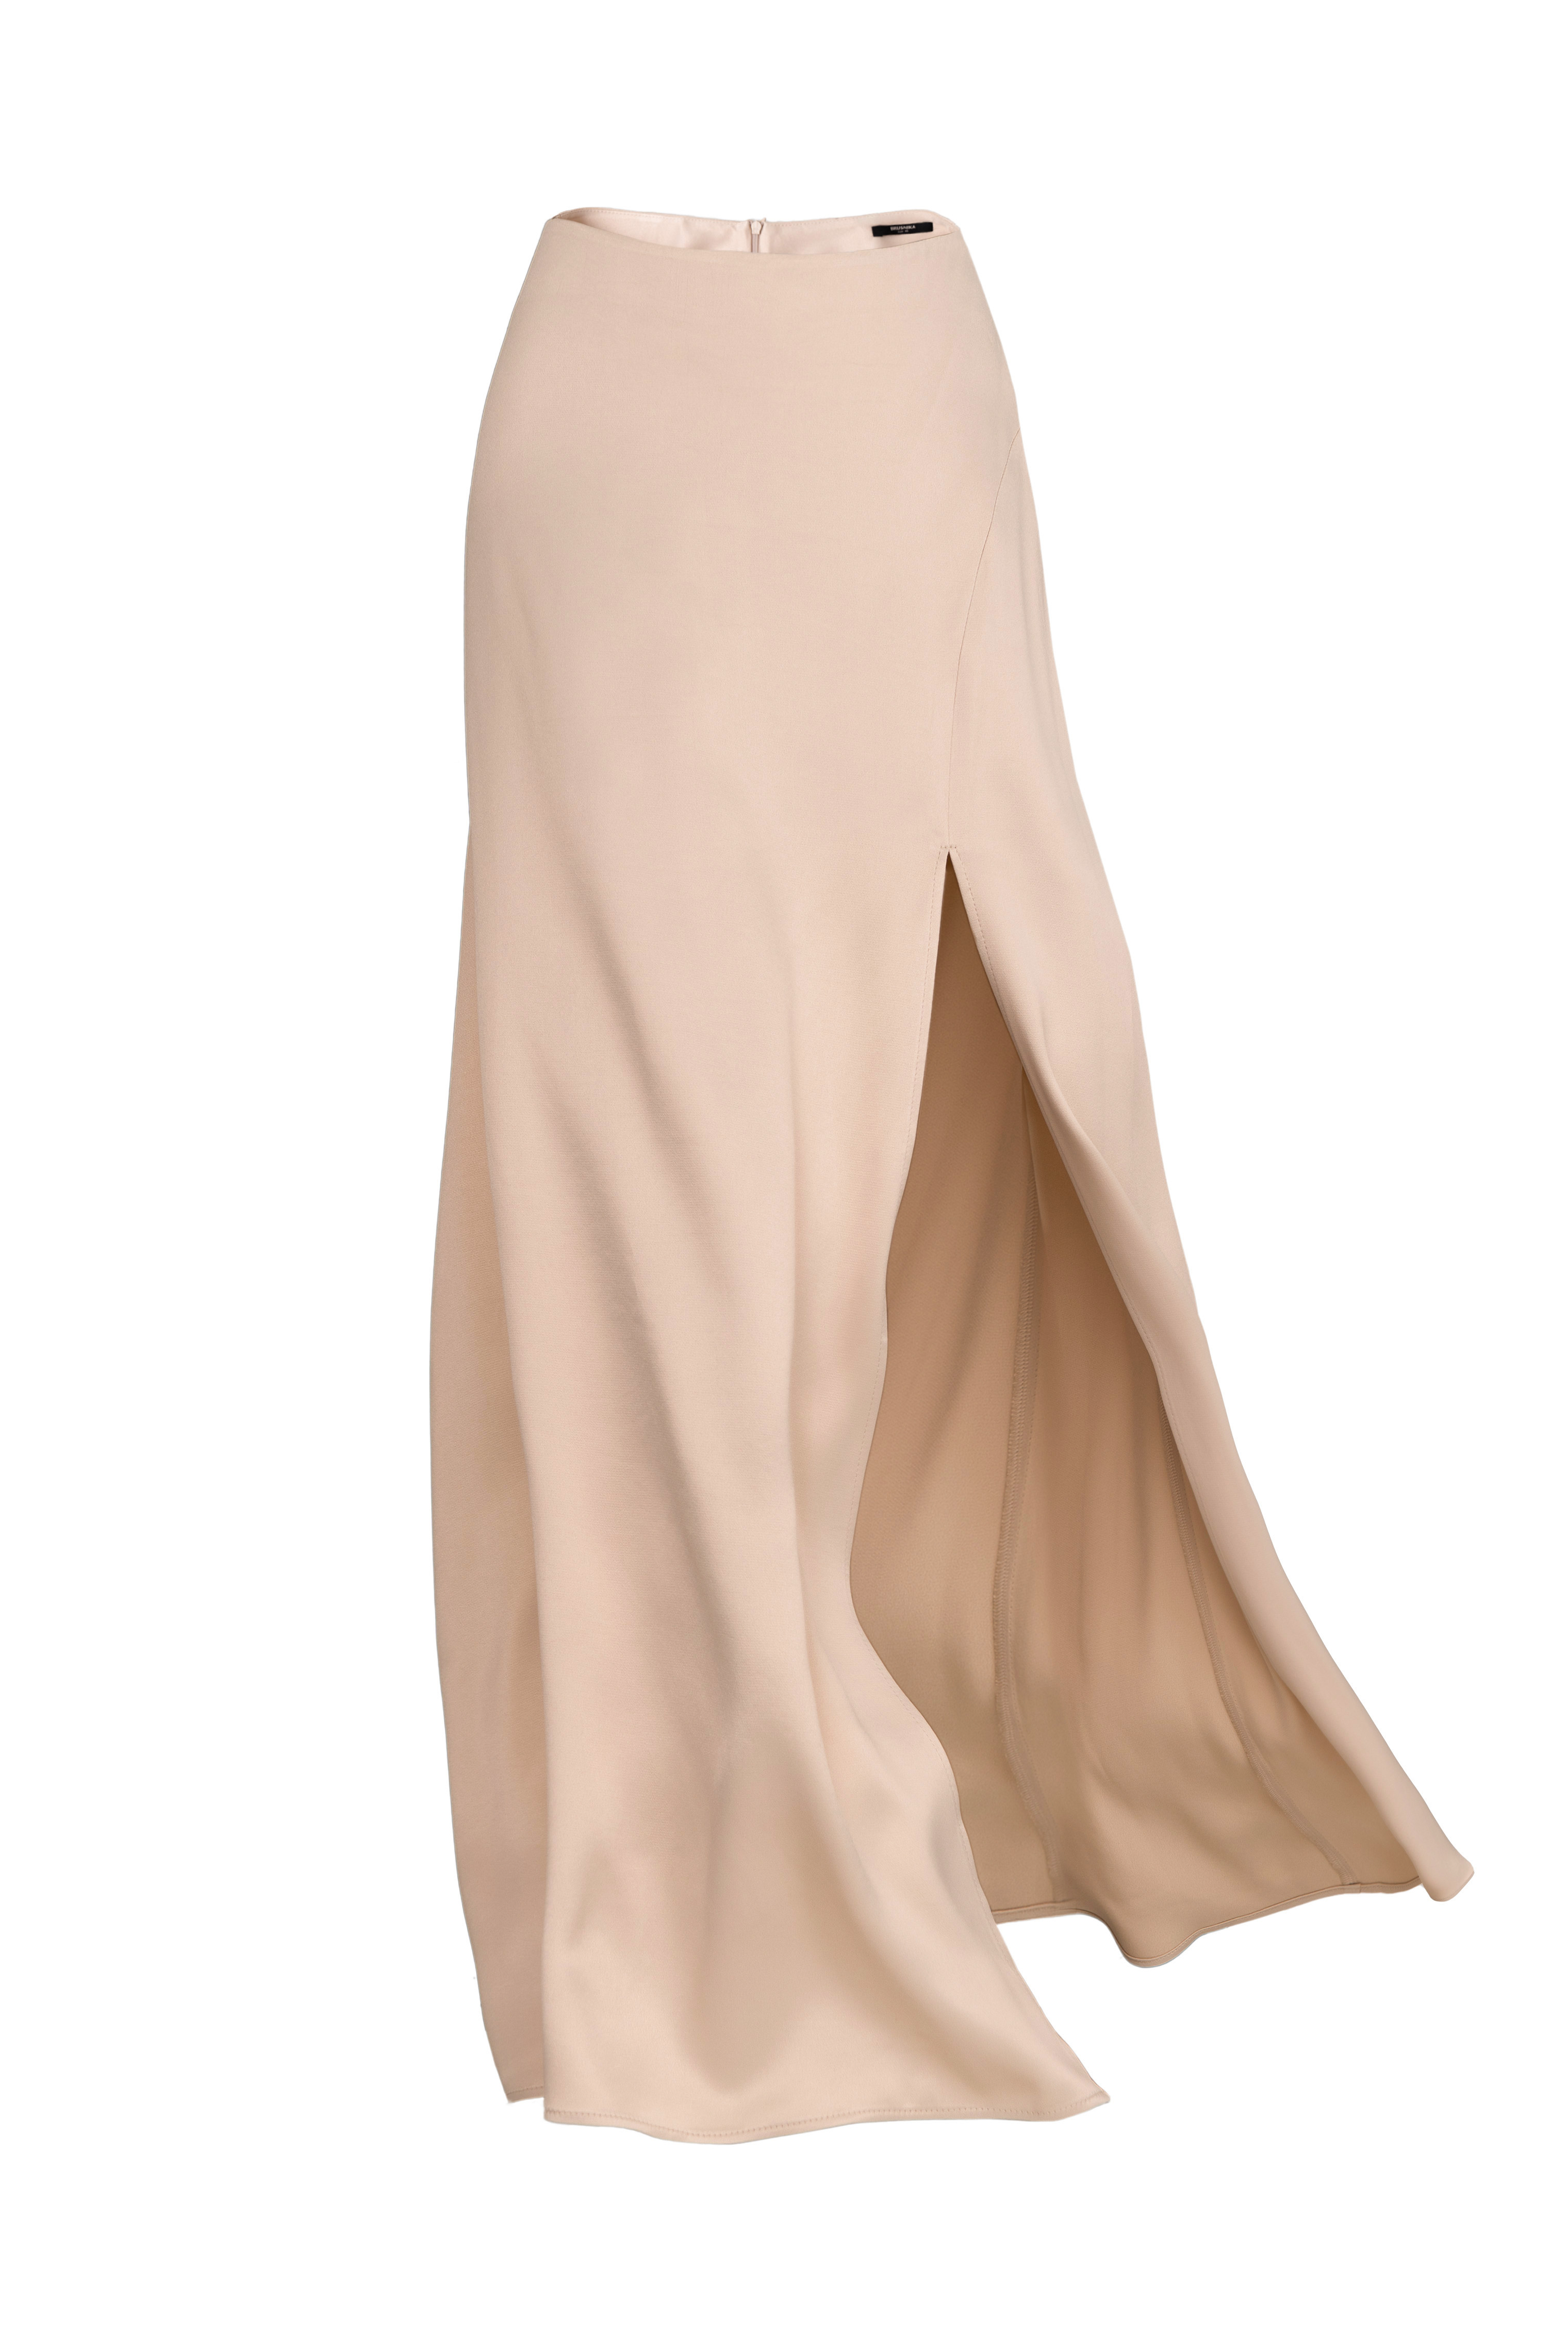 Skirt 4634-34 Dark beige from BRUSNiKA